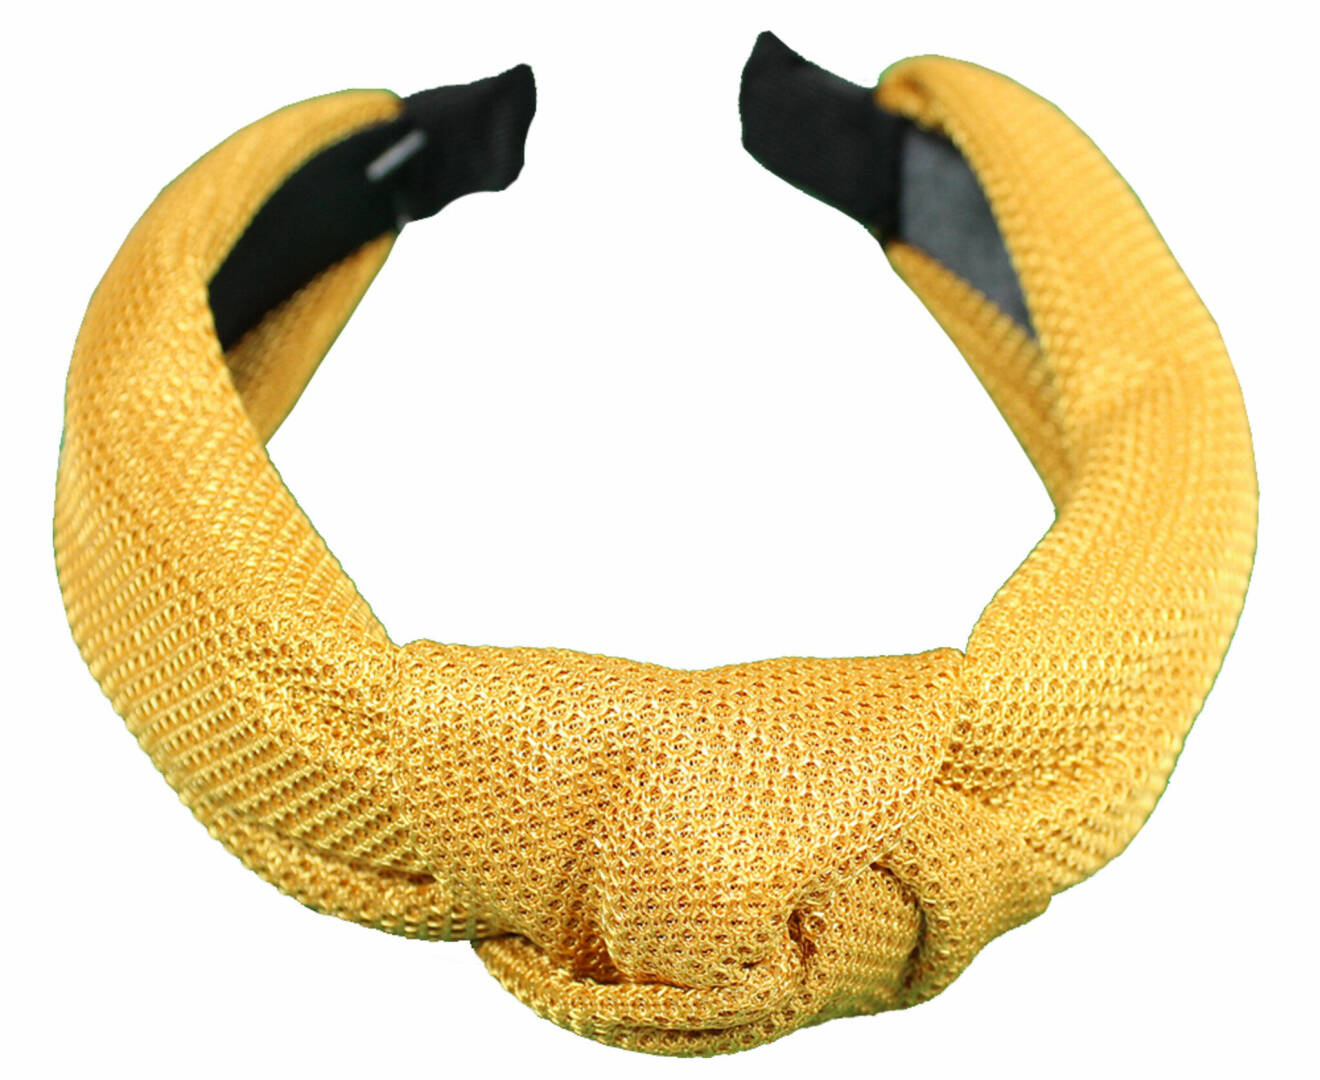 Brett diadem i textil med knut, från Complement.